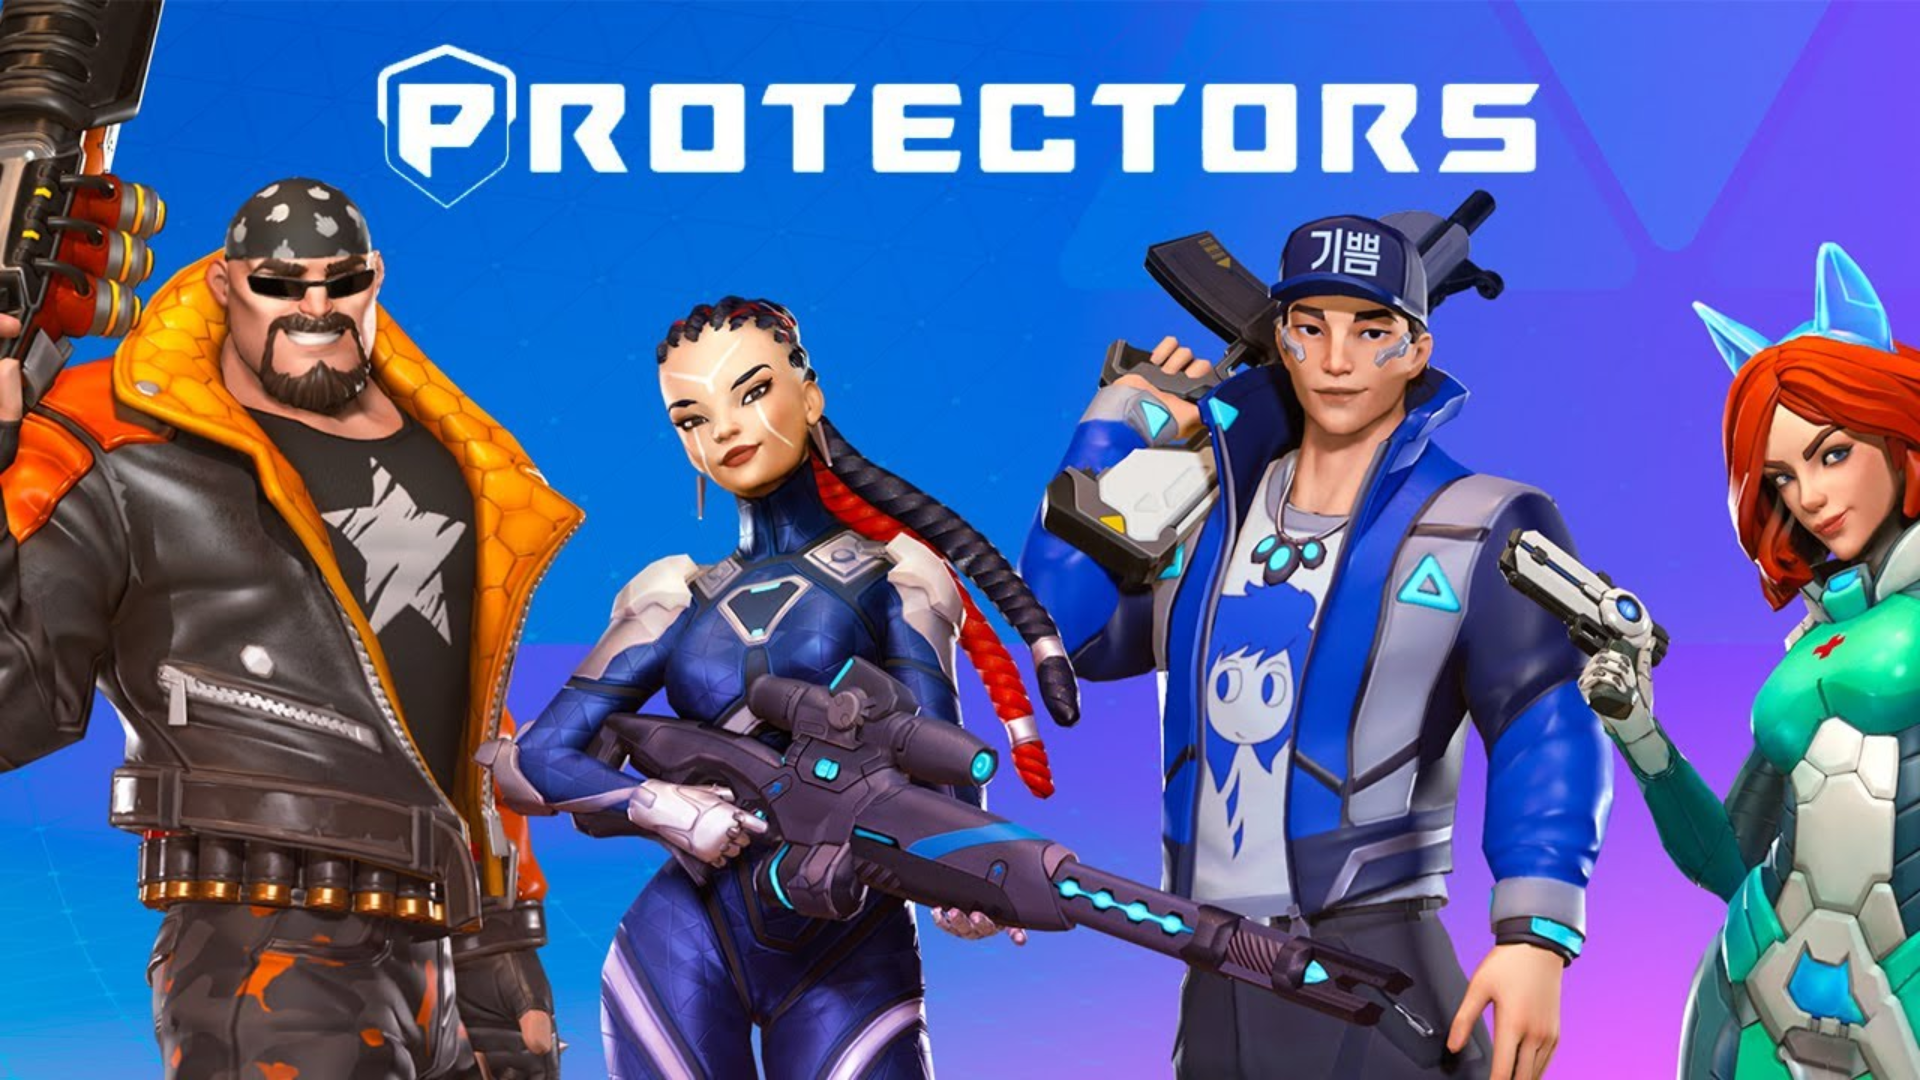 Banner of Người bảo vệ: Shooter Legends 1.1.2